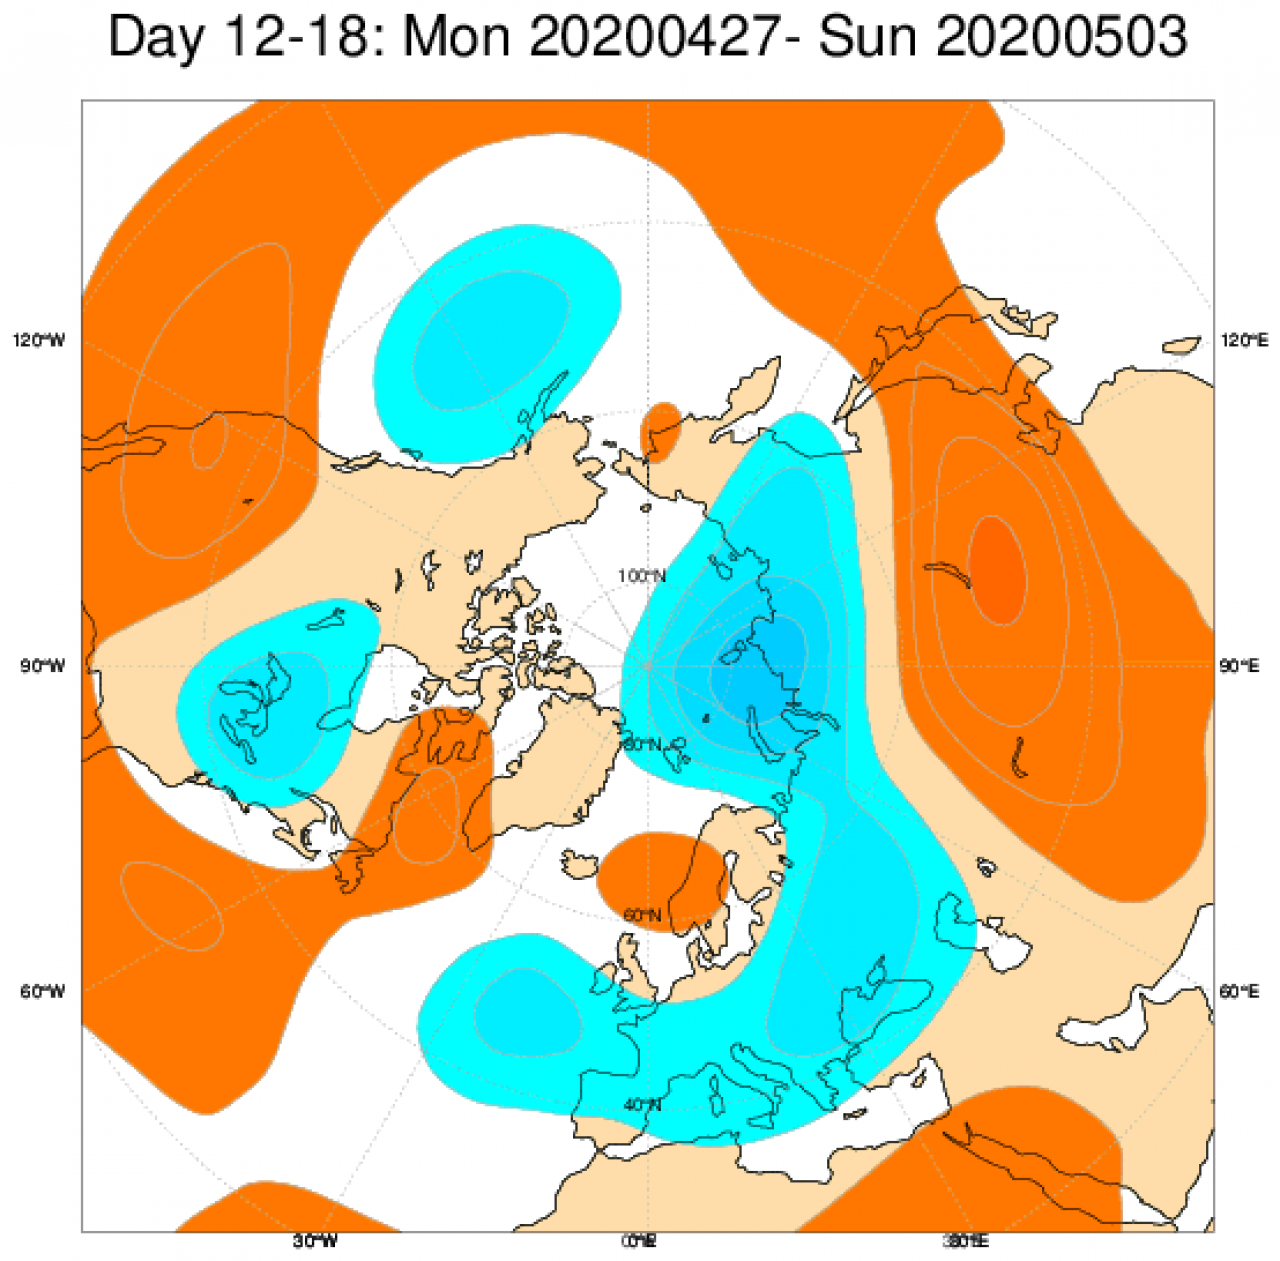 Le anomalie di geopotenziale attese nel periodo 27 aprile - 3 maggio secondo il modello ECMWF